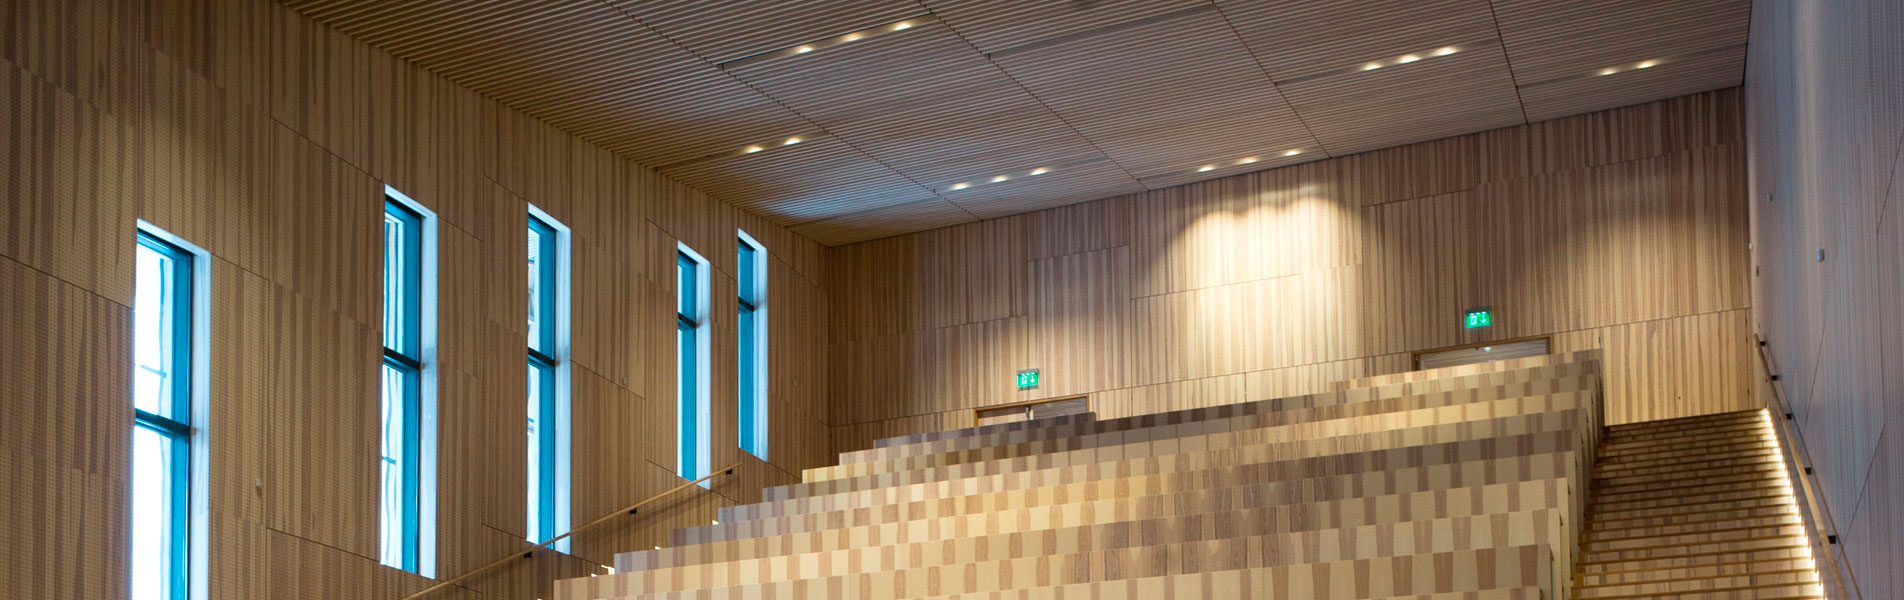 AVC designede integrerede AV-løsninger til Moesgård Museum med respekt for det arkitektoniske udtryk